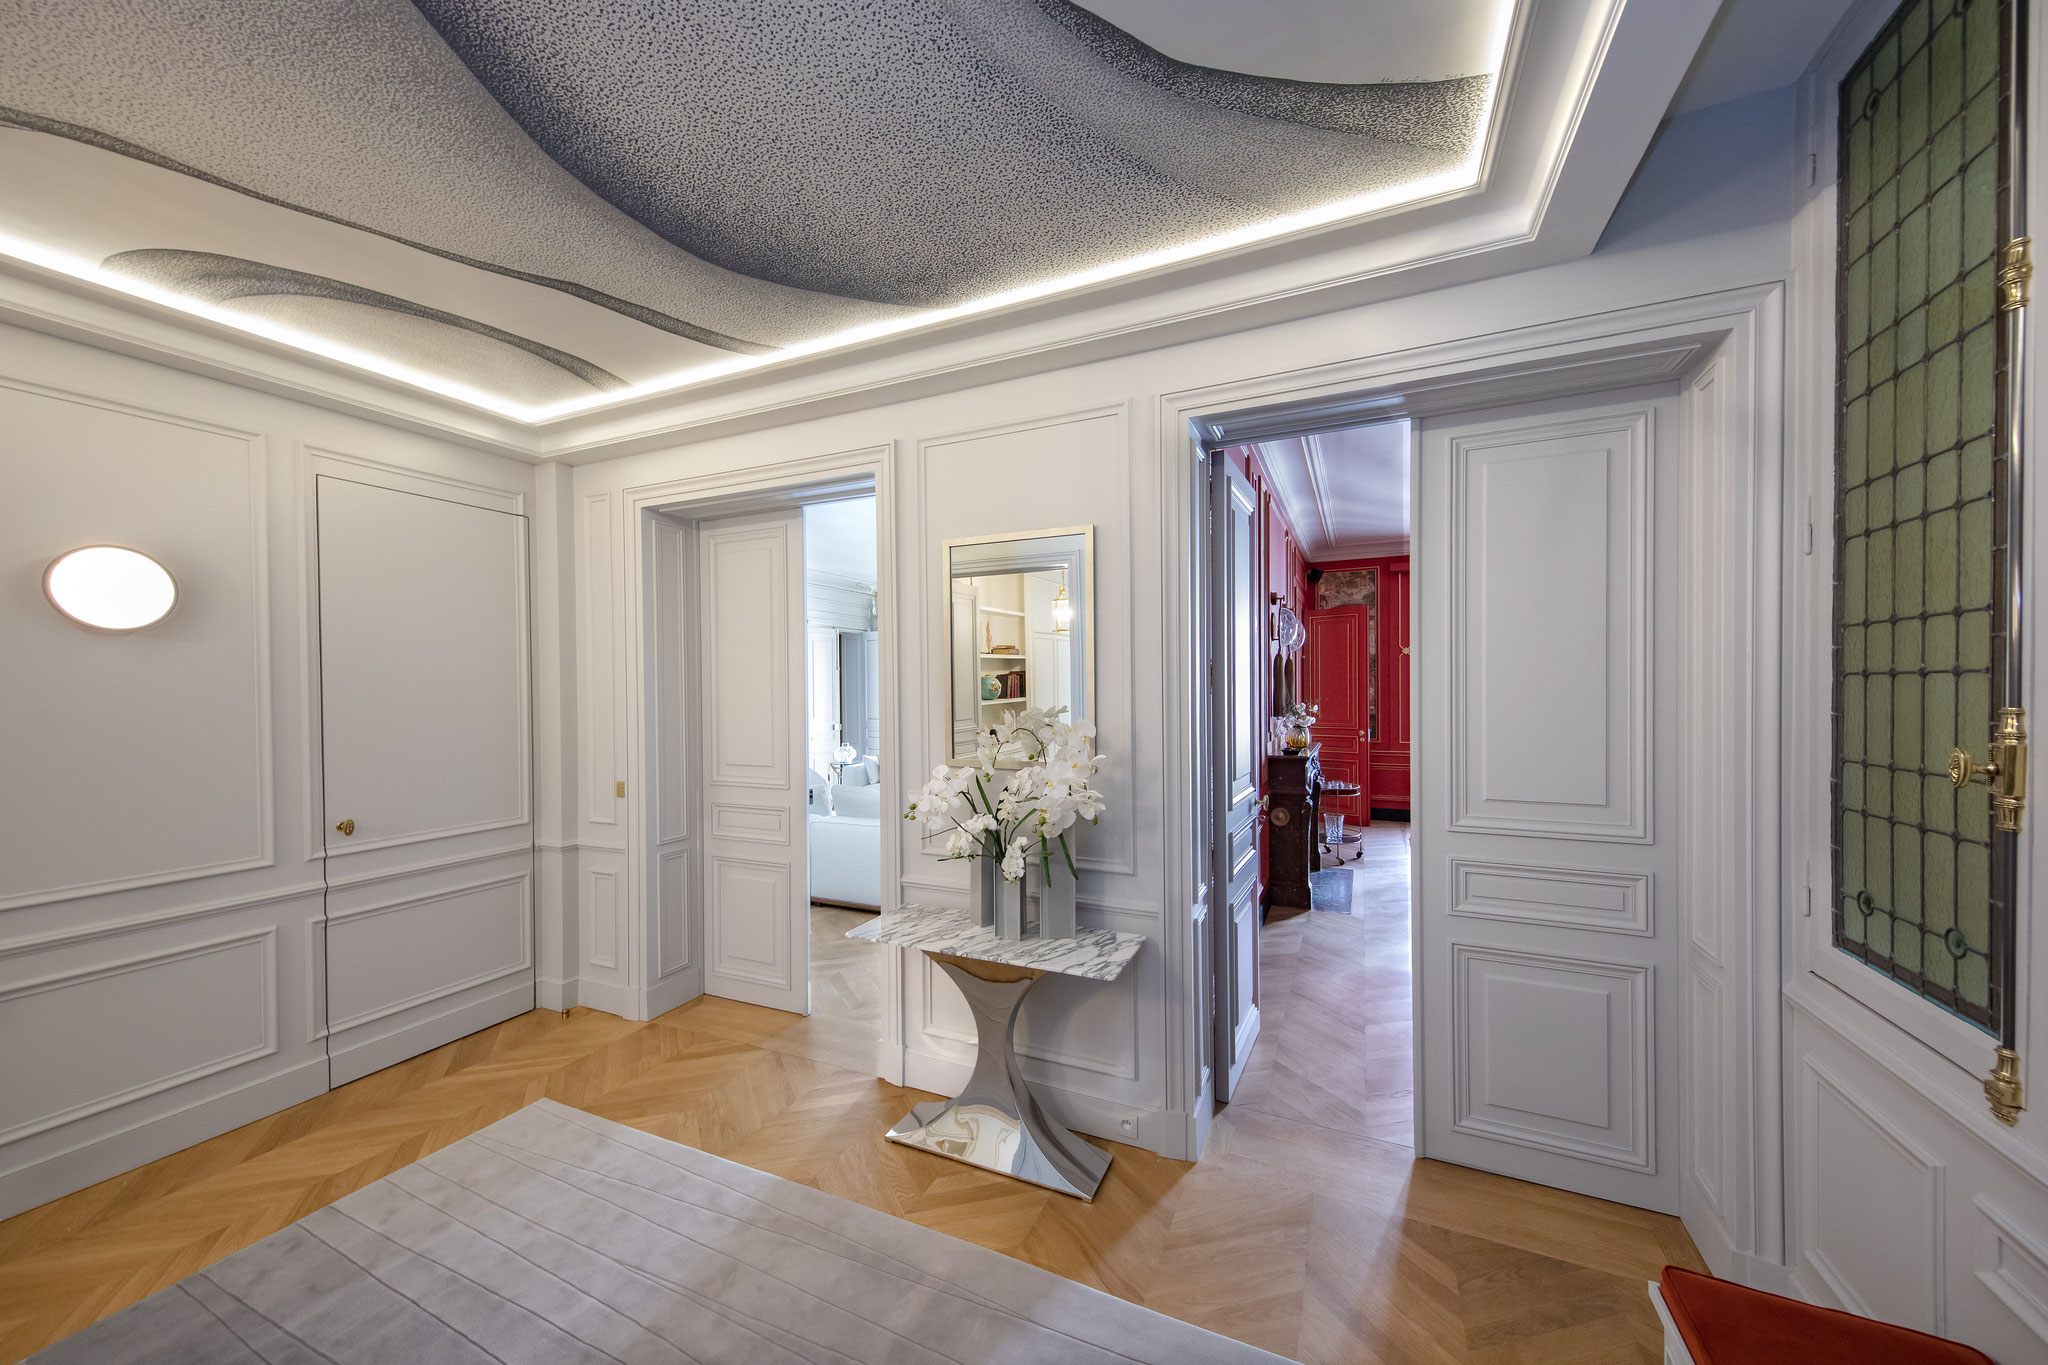 Residential, Rue Saint Honoré Paris for Volume ABC  @Vincent Bourdon